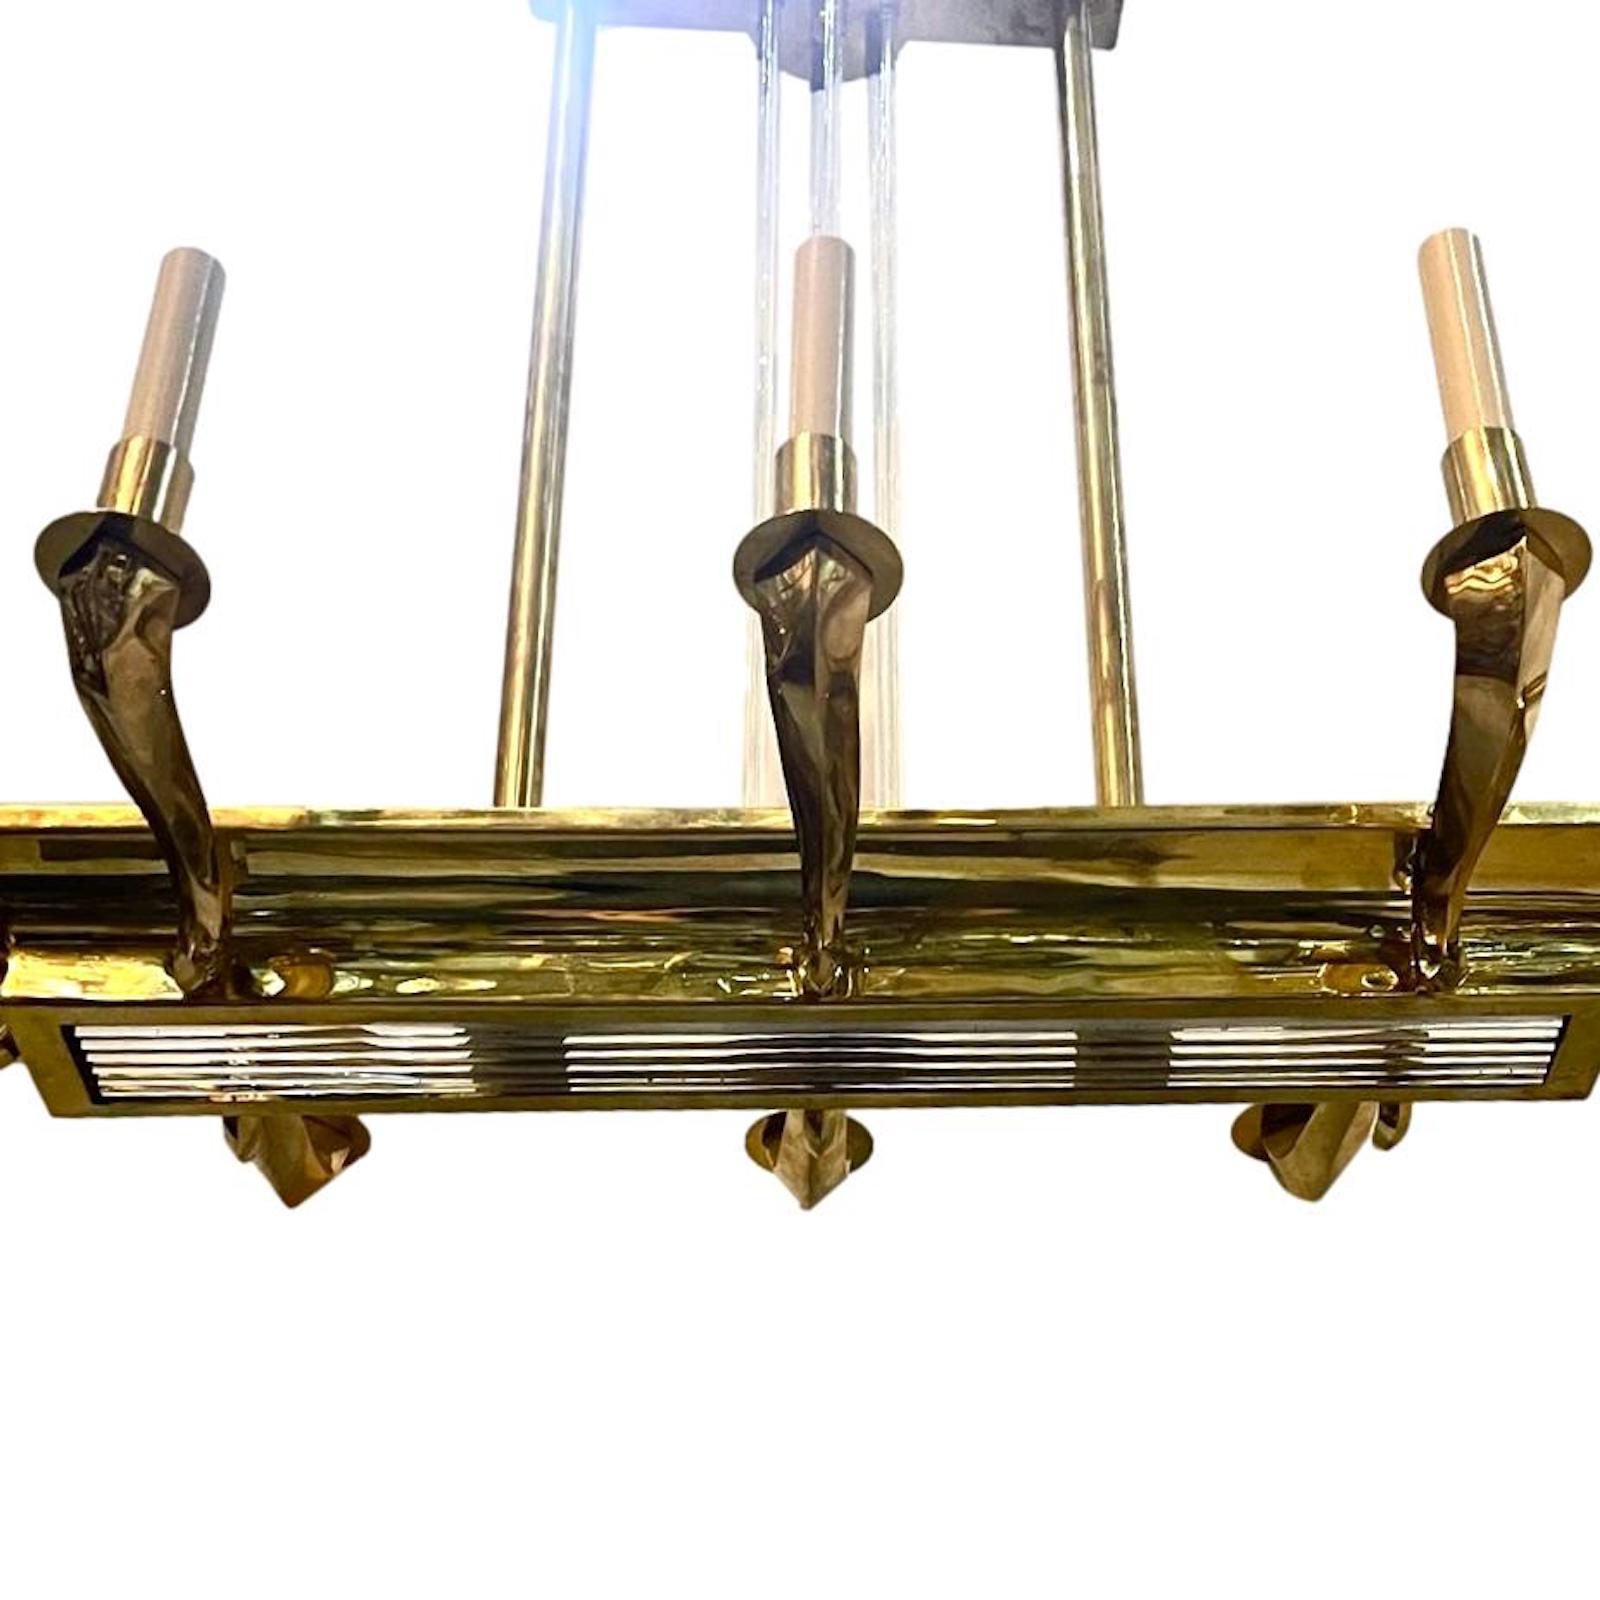 Lustre français à huit bras de lumière en bronze doré de style moderne, datant des années 1960, avec deux lumières intérieures et des tiges de verre.

Mesures :
Longueur : 36